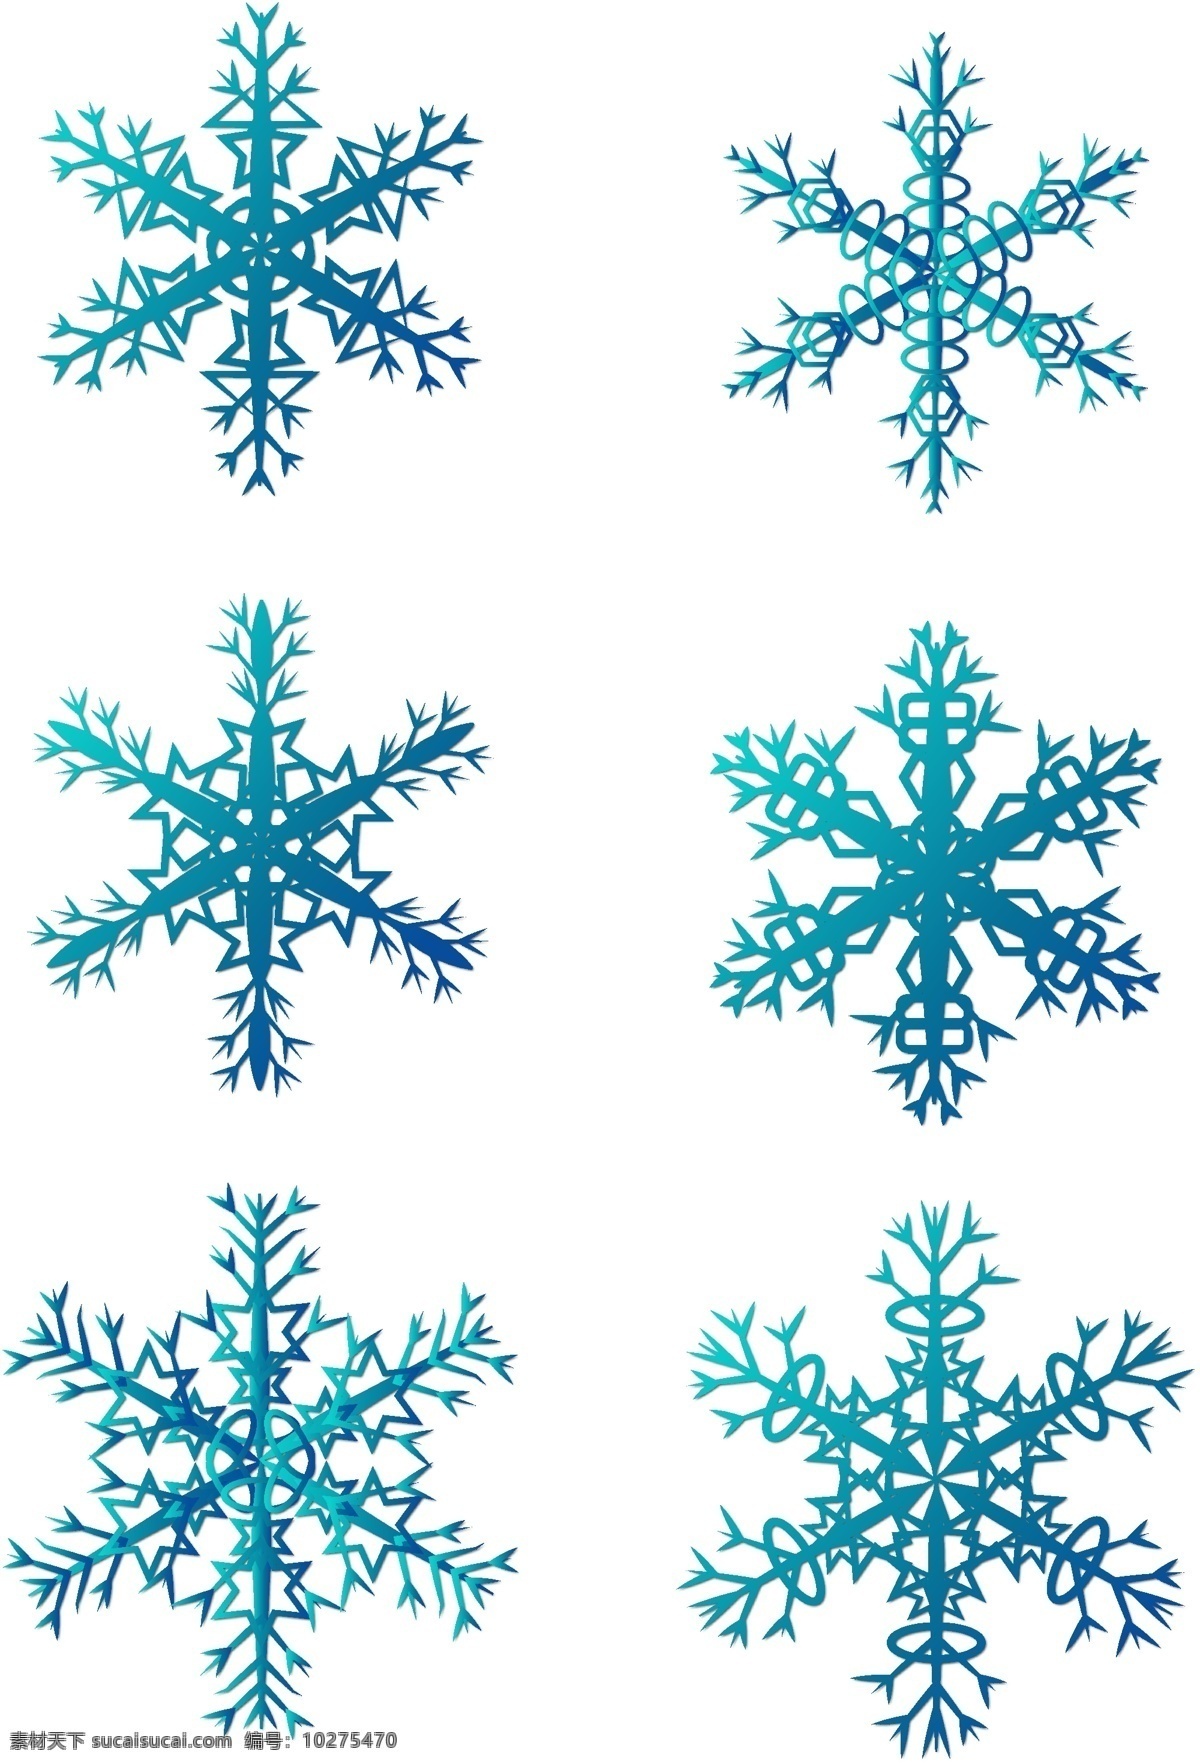 圣诞节 冰雪 花 元素 雪花元素 圣诞雪花 冰雪花 蓝色雪花 简约雪花